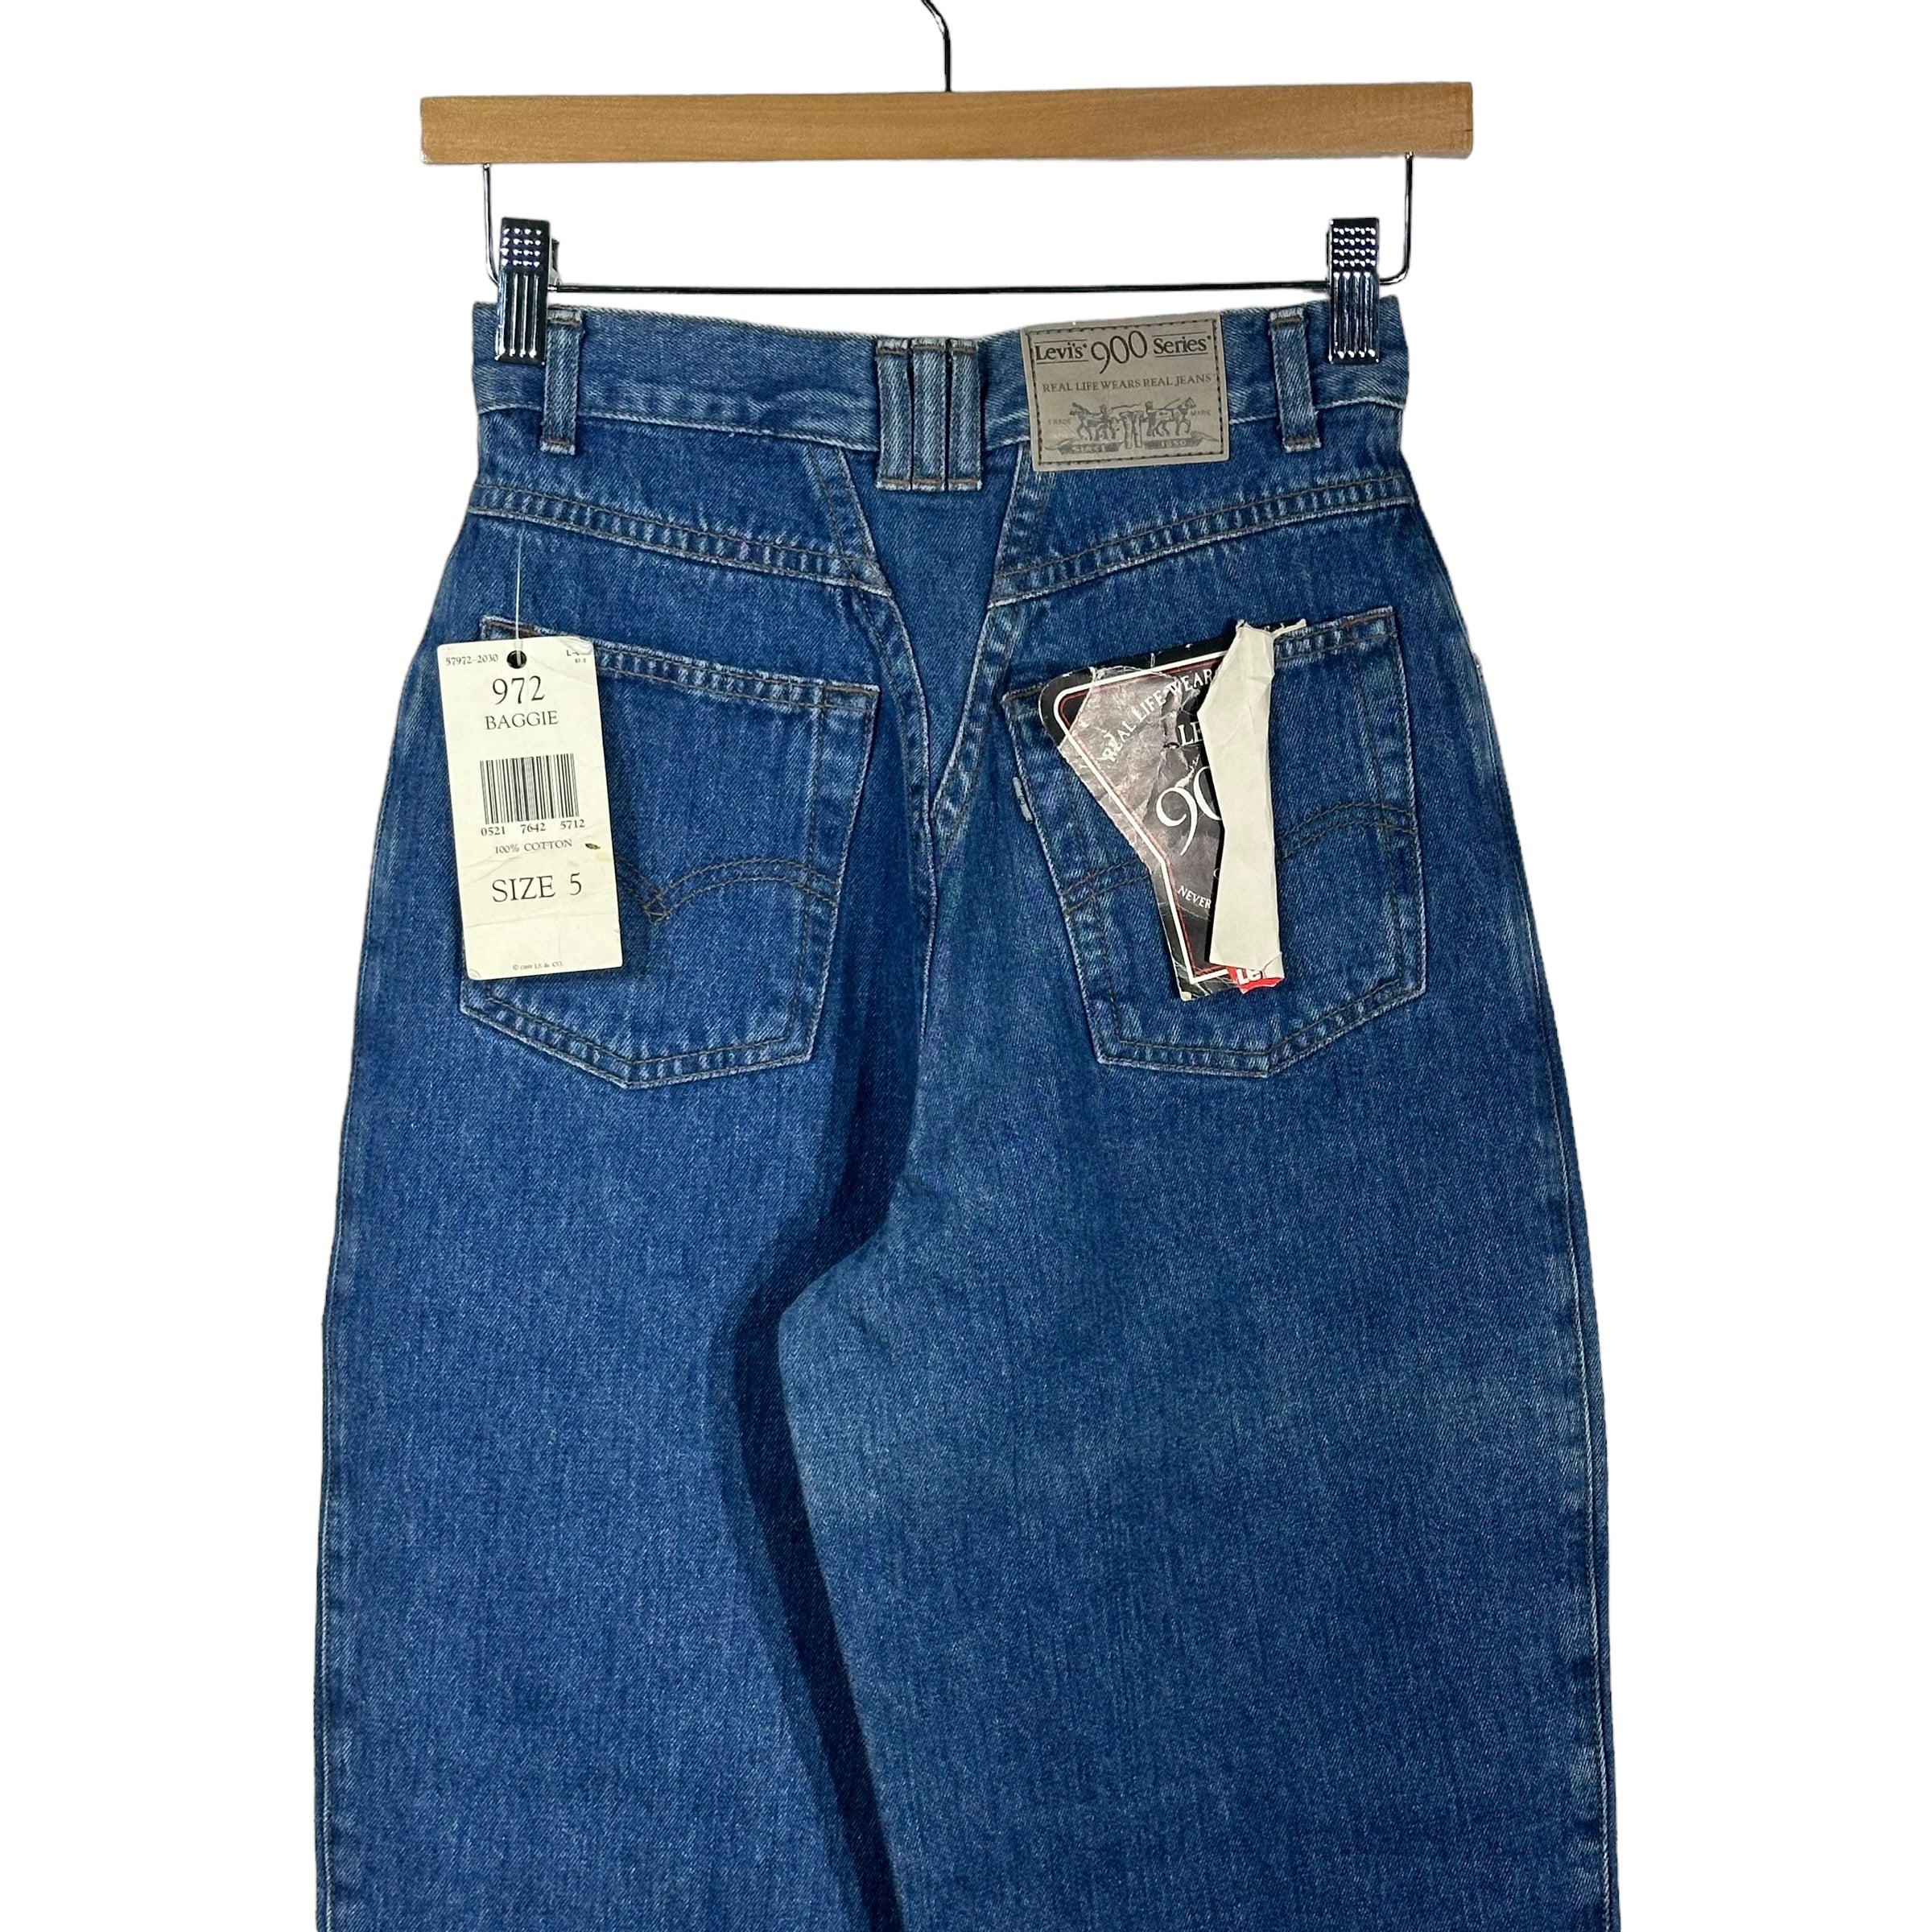 Vintage NWT Levis Women's Denim Jeans